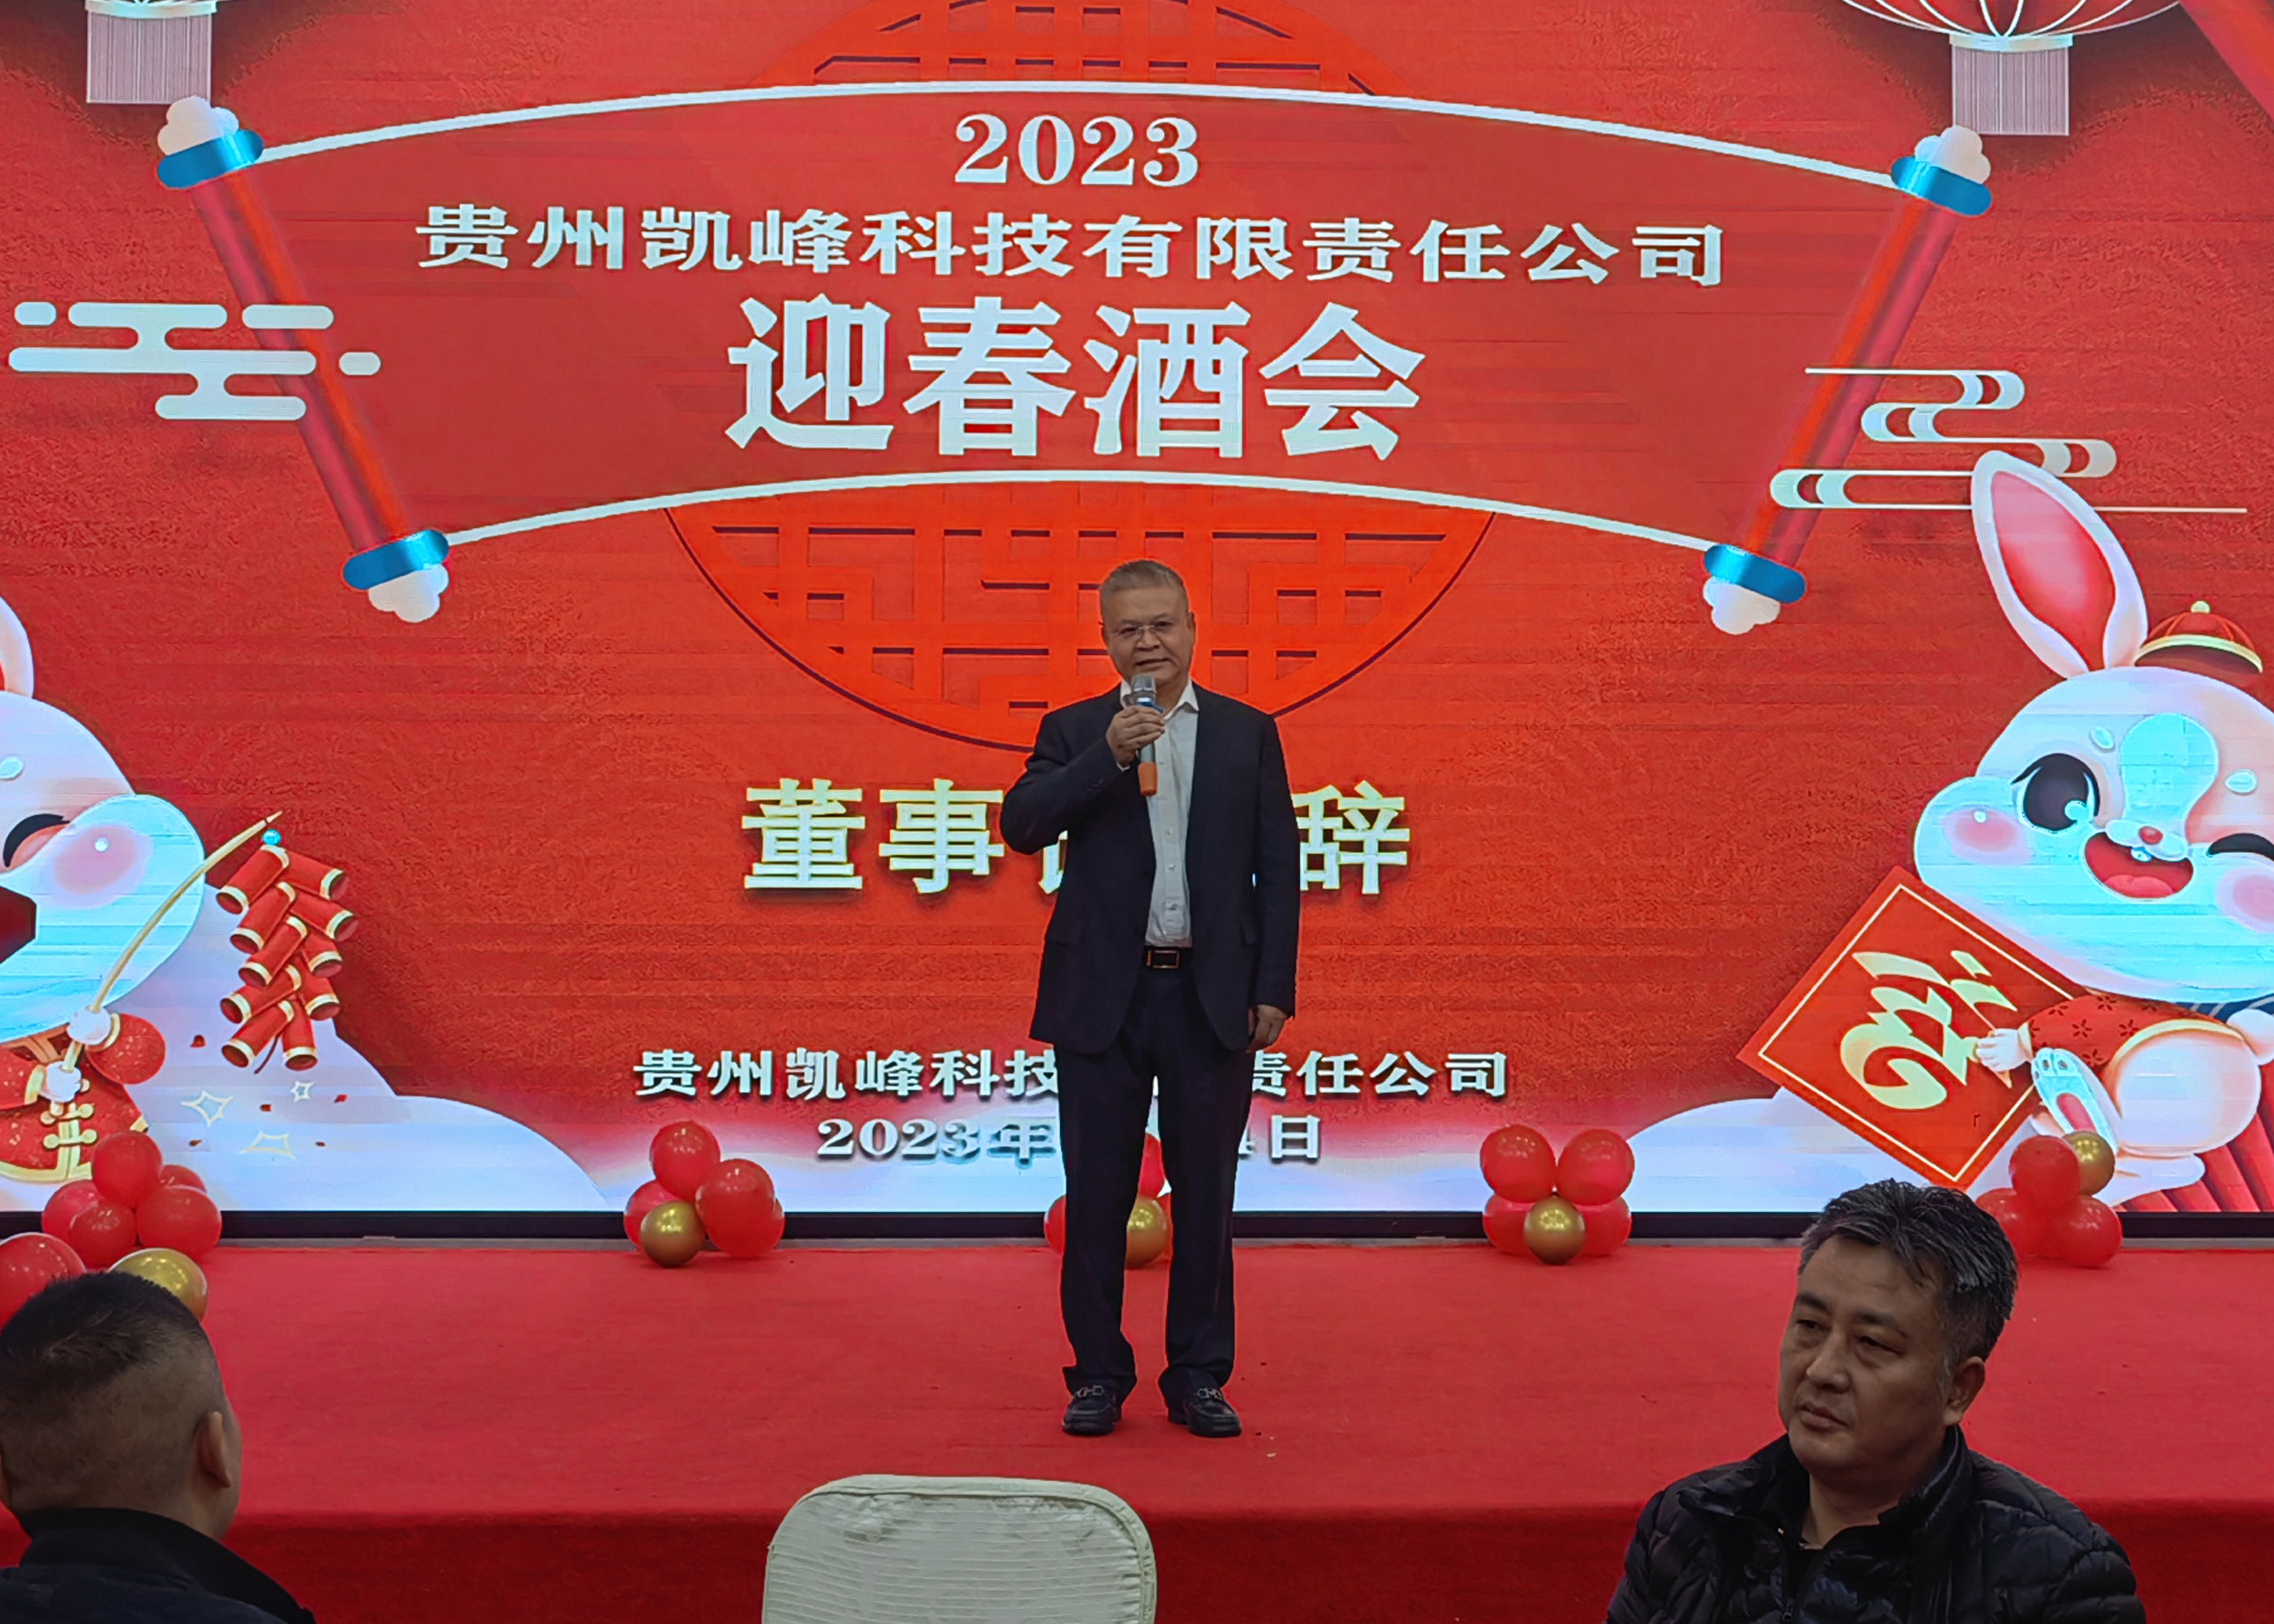 全面完成2023年各项任务 为实现凯峰梦和中国梦而努力奋斗